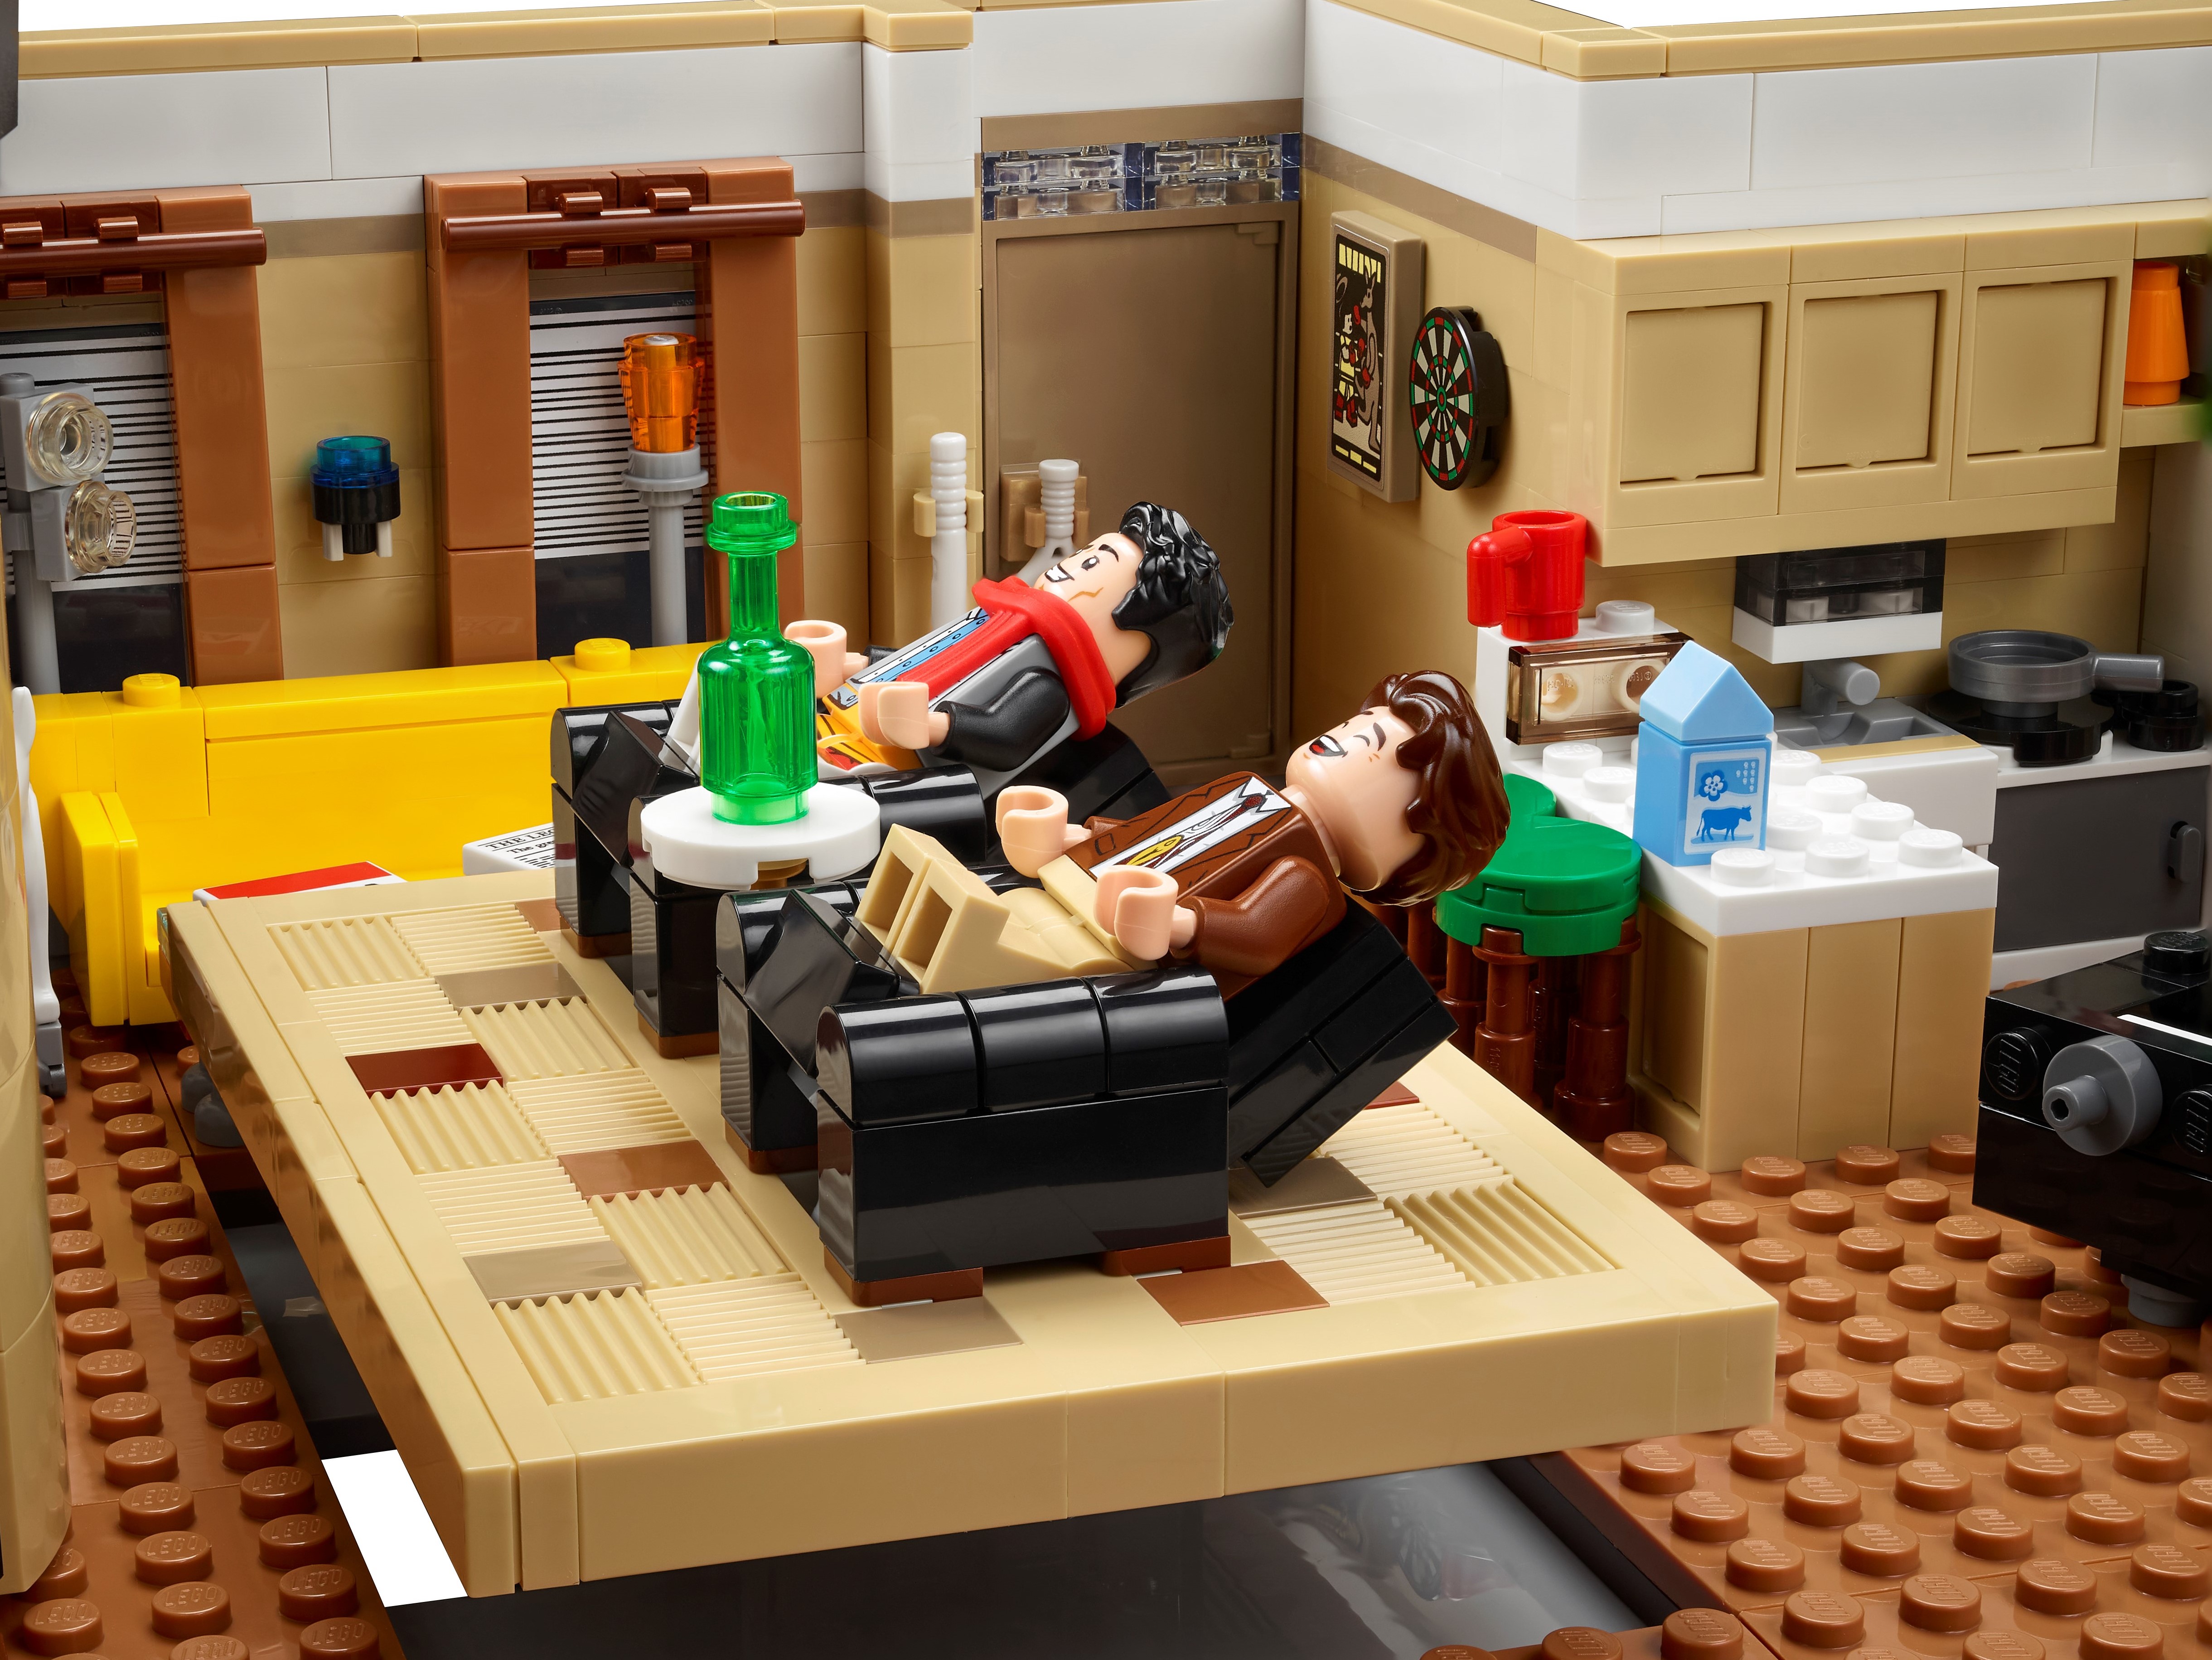 LEGO® Icons 10292 Les appartements de Friends - Lego - Achat & prix